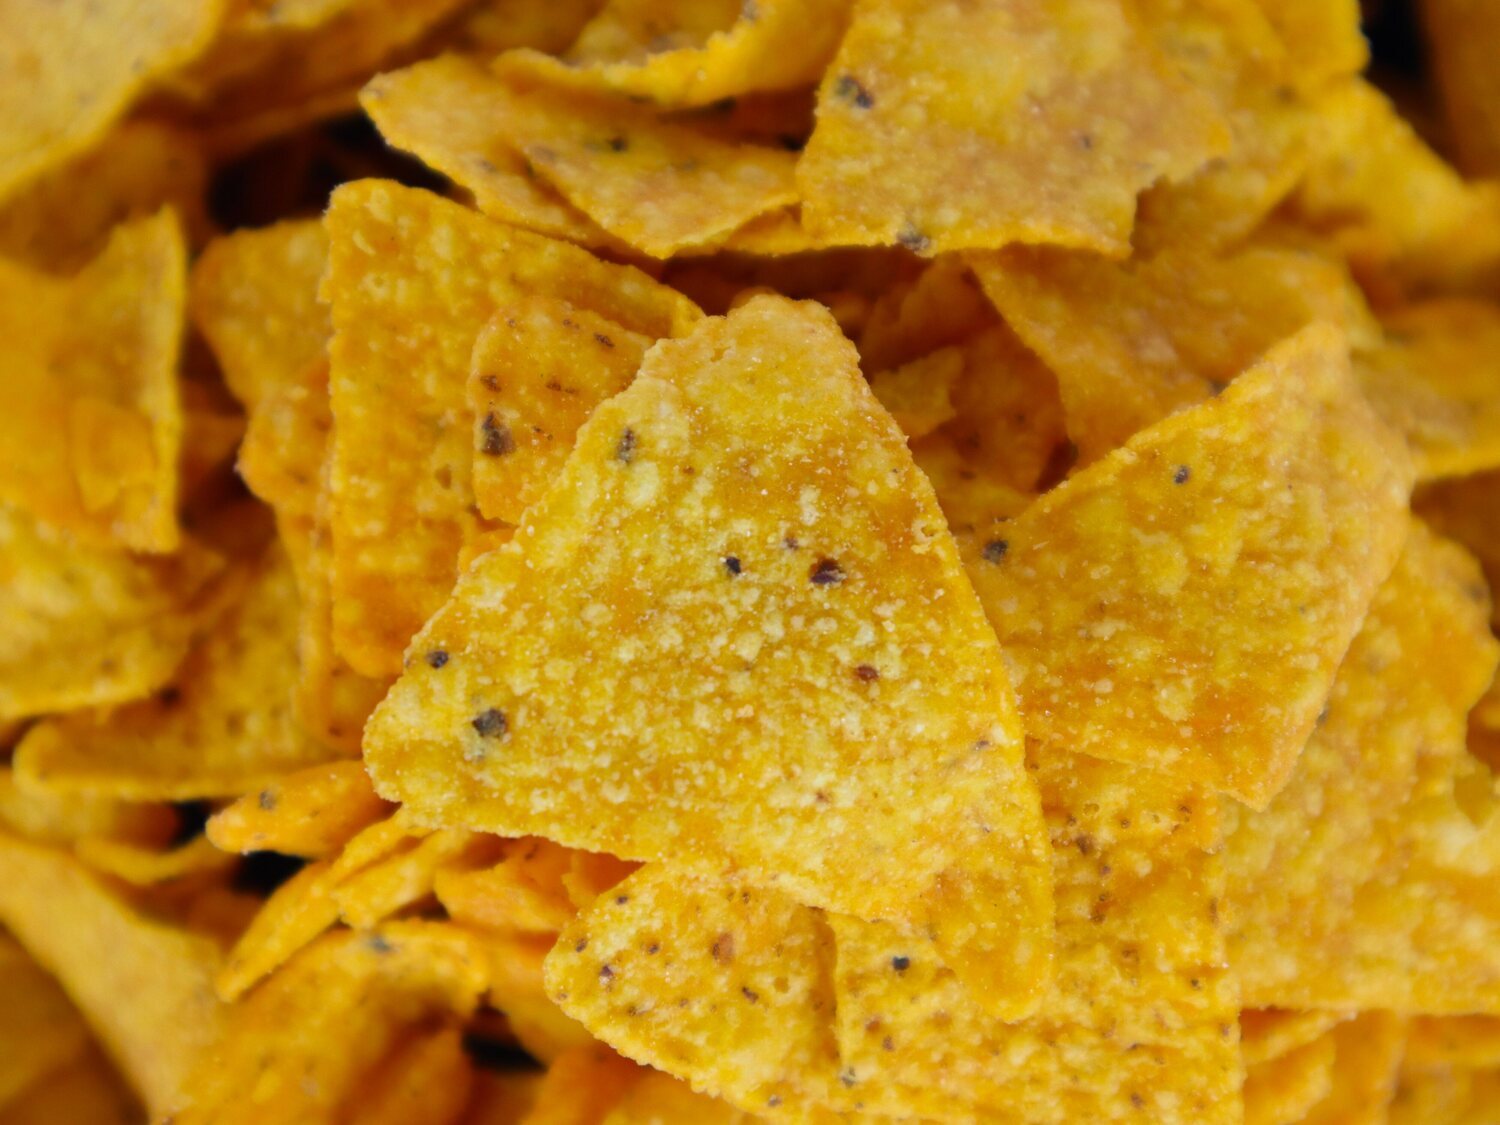 Alerta alimentaria: retiran de la venta este snack por la muerte de un adolescente en un reto viral